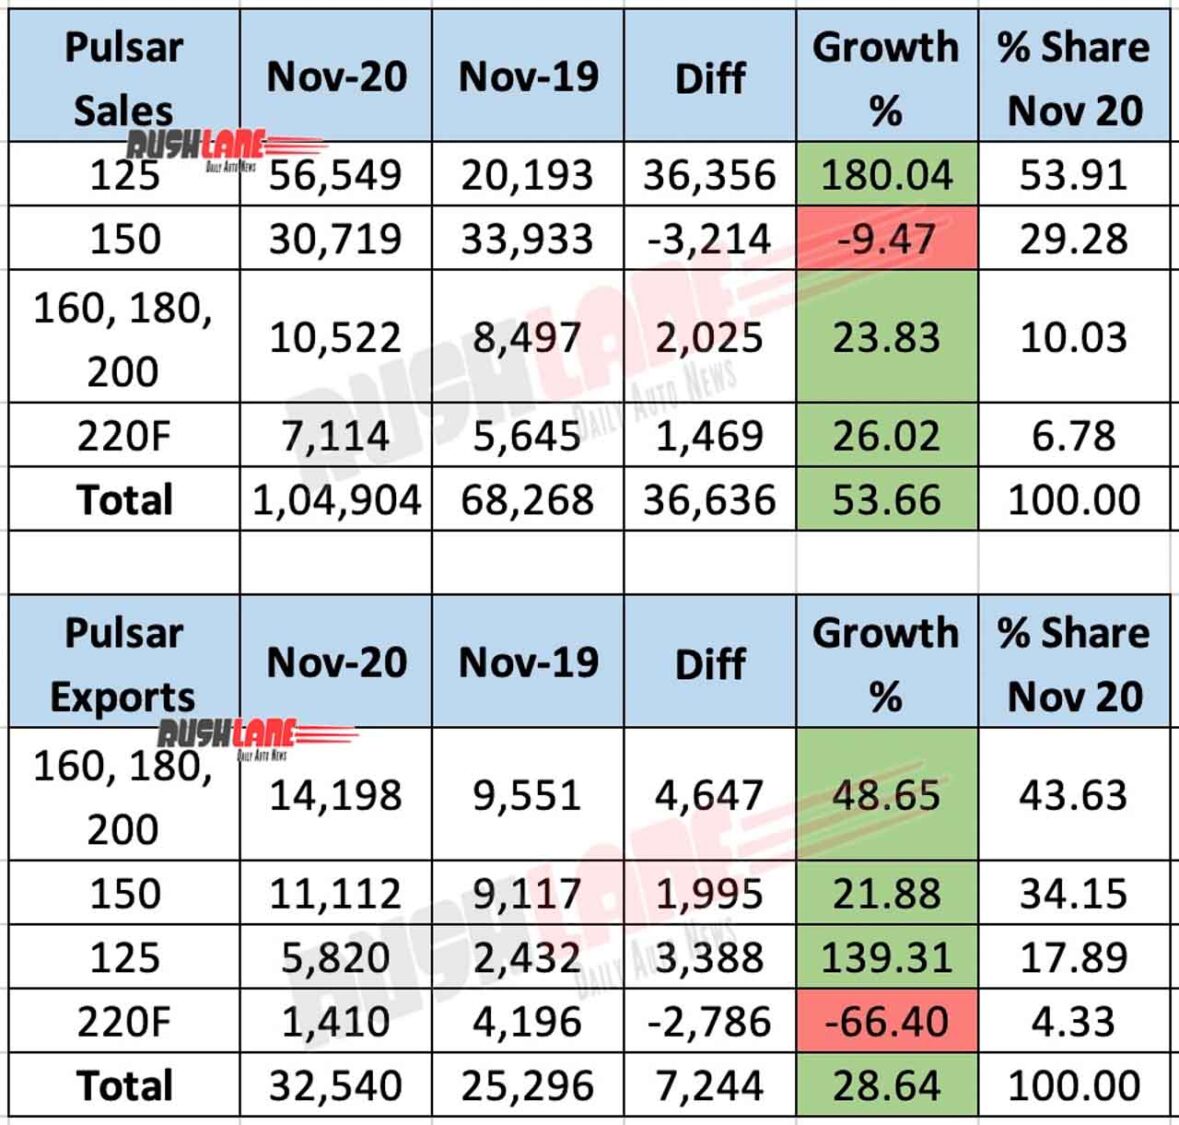 Bajaj Pulsar Sales, Exports - Nov 2020